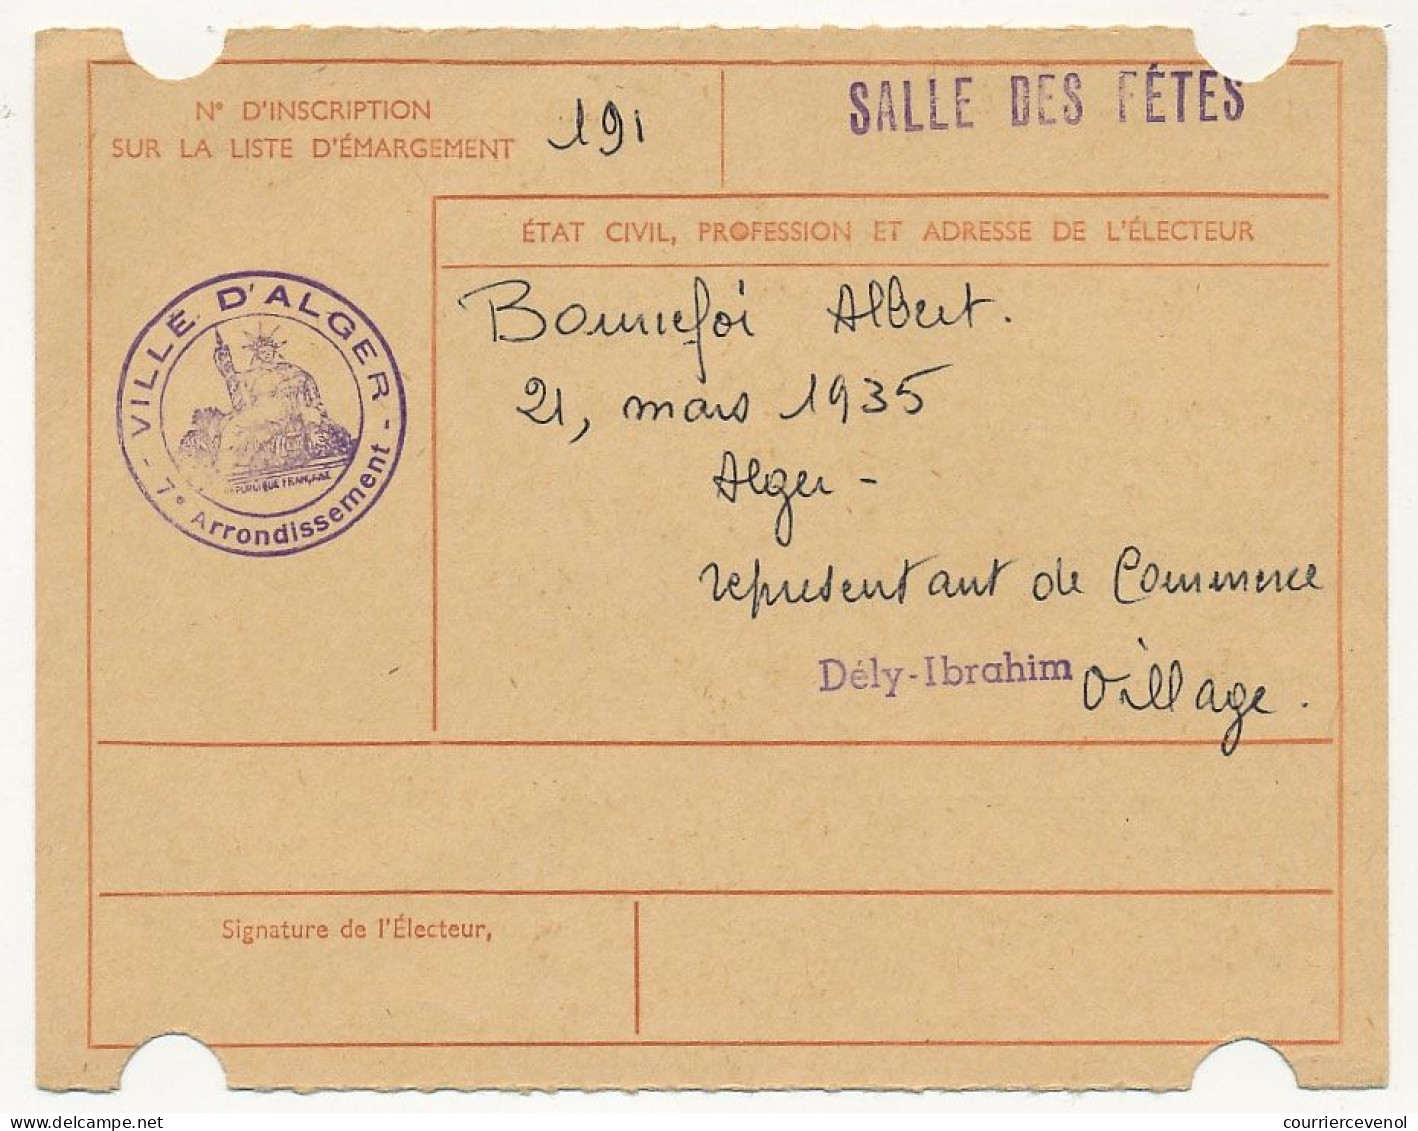 FRANCE / ALGERIE - Carte D'électeur 1959 Algérie - Ville D'Alger - Documents Historiques